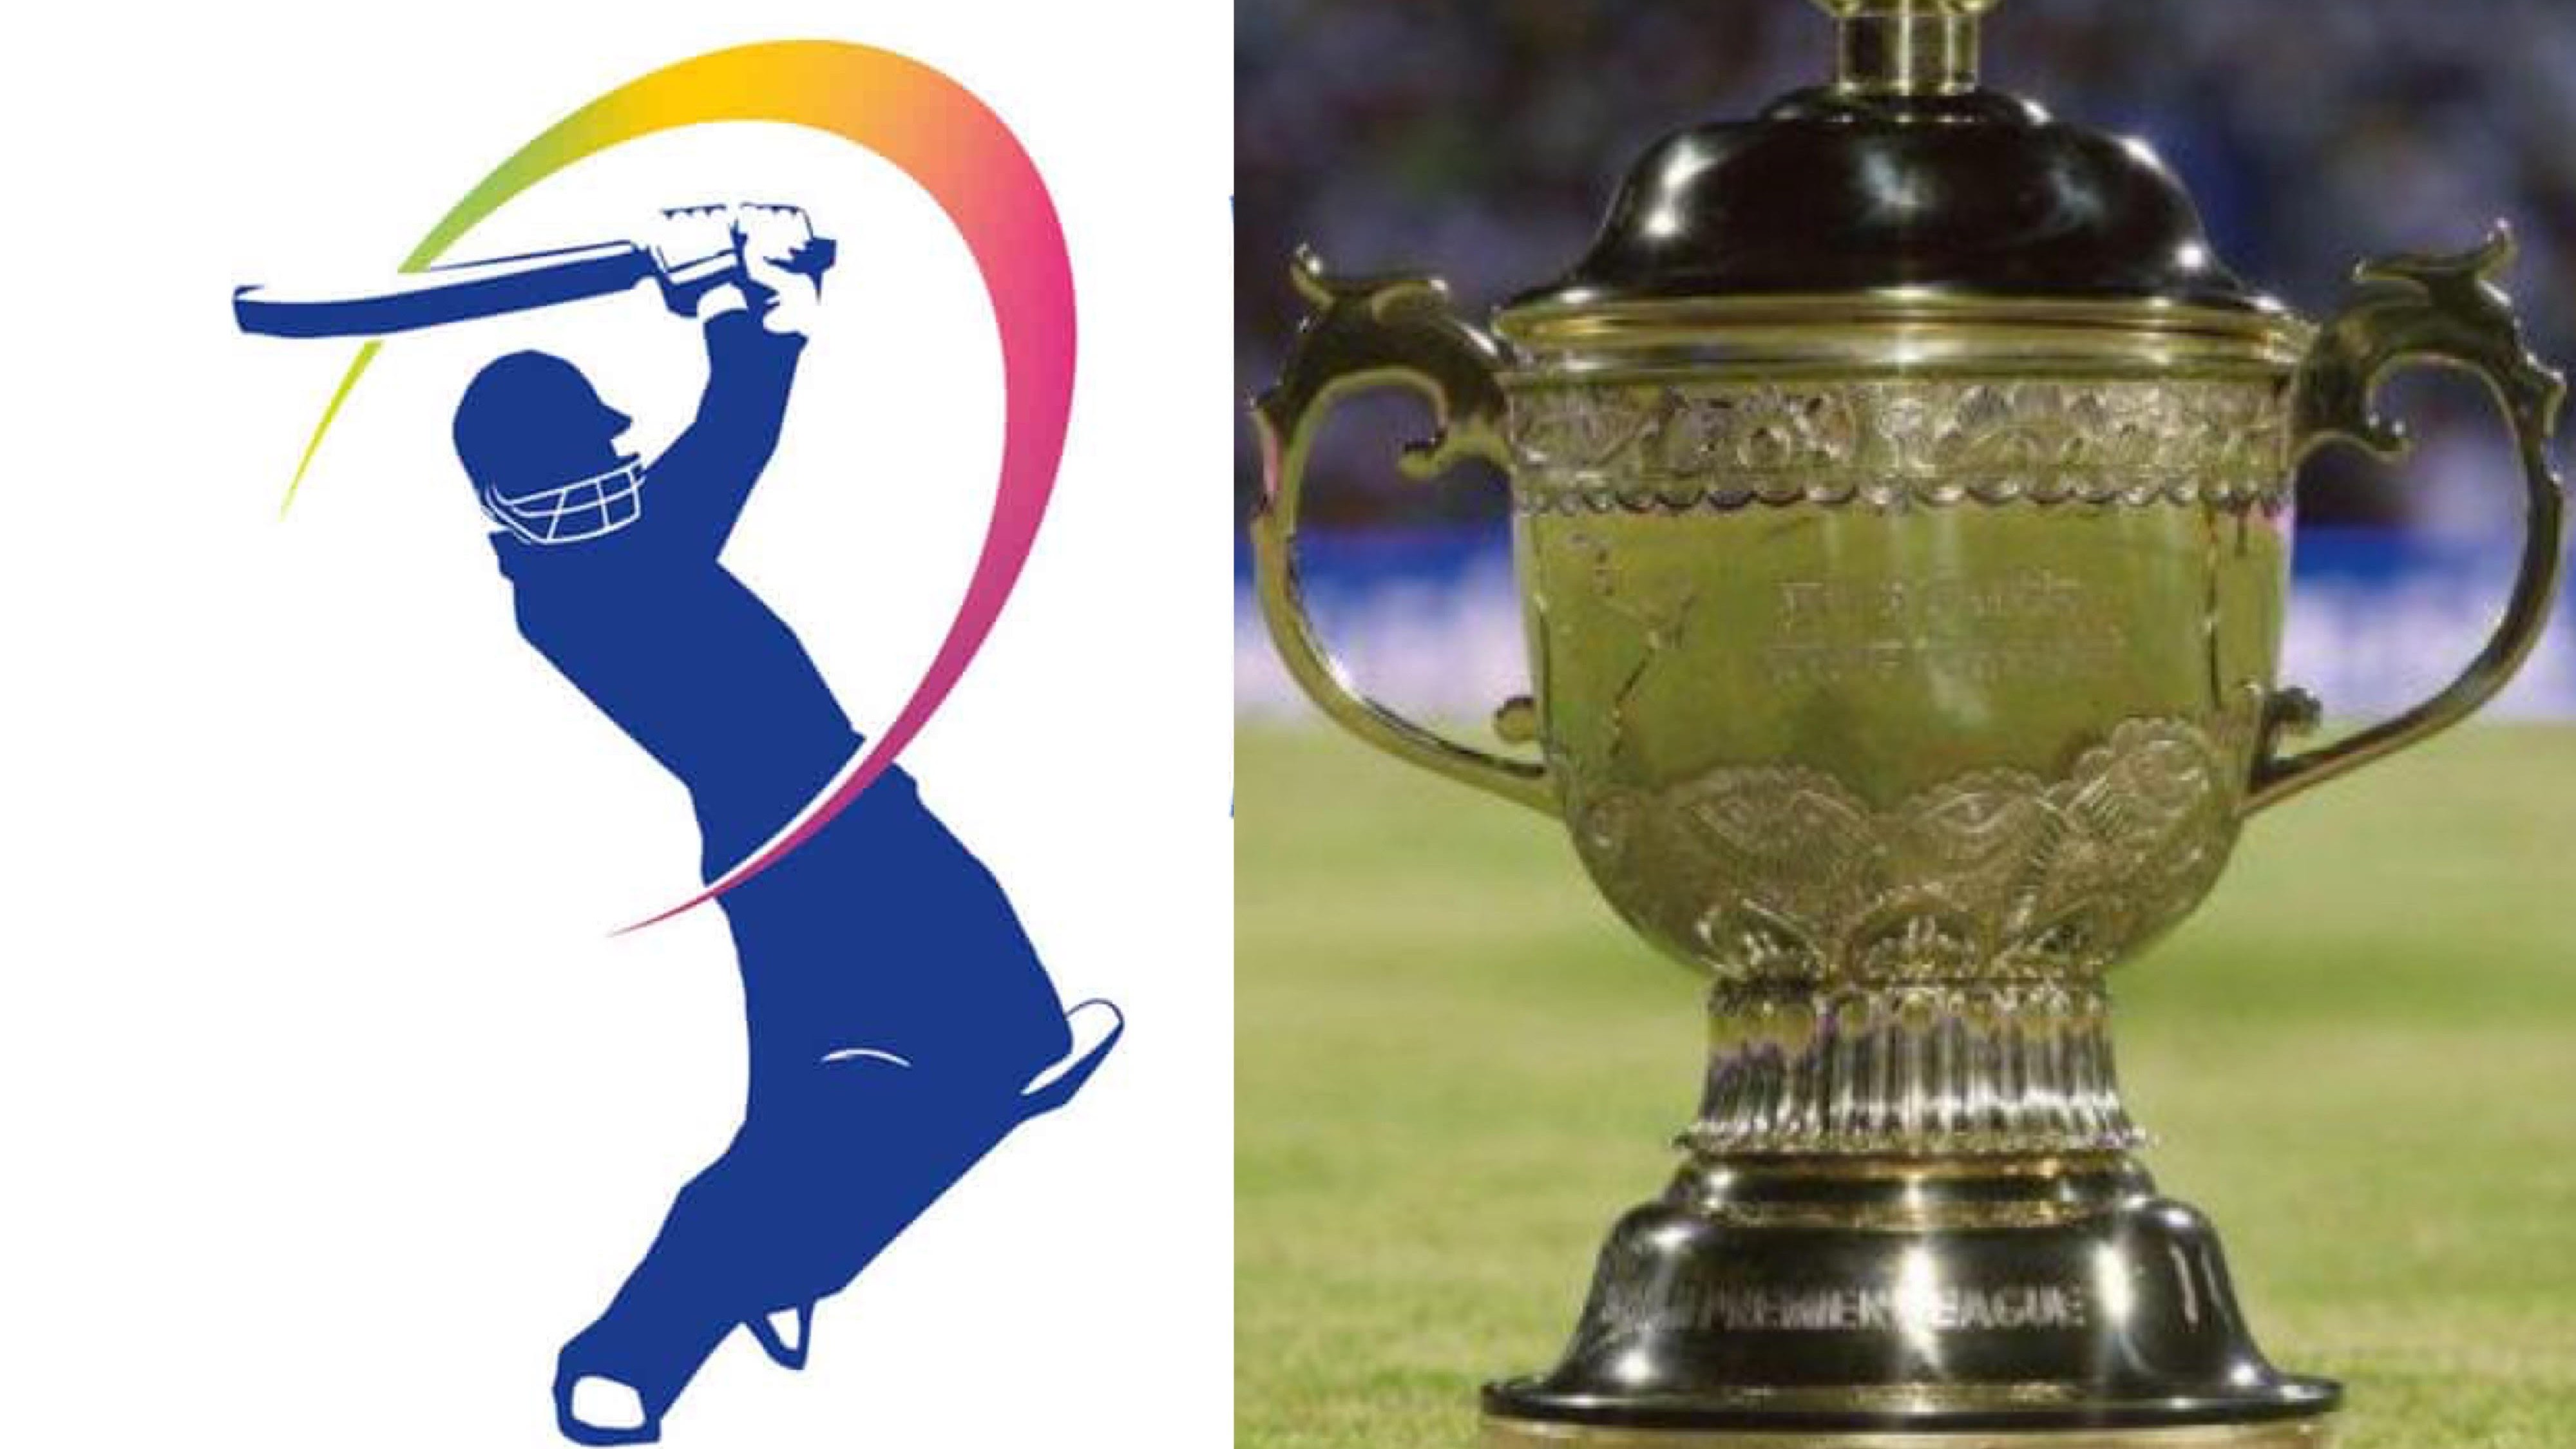 IPL 2020: New logo revealed for Dream11 IPL